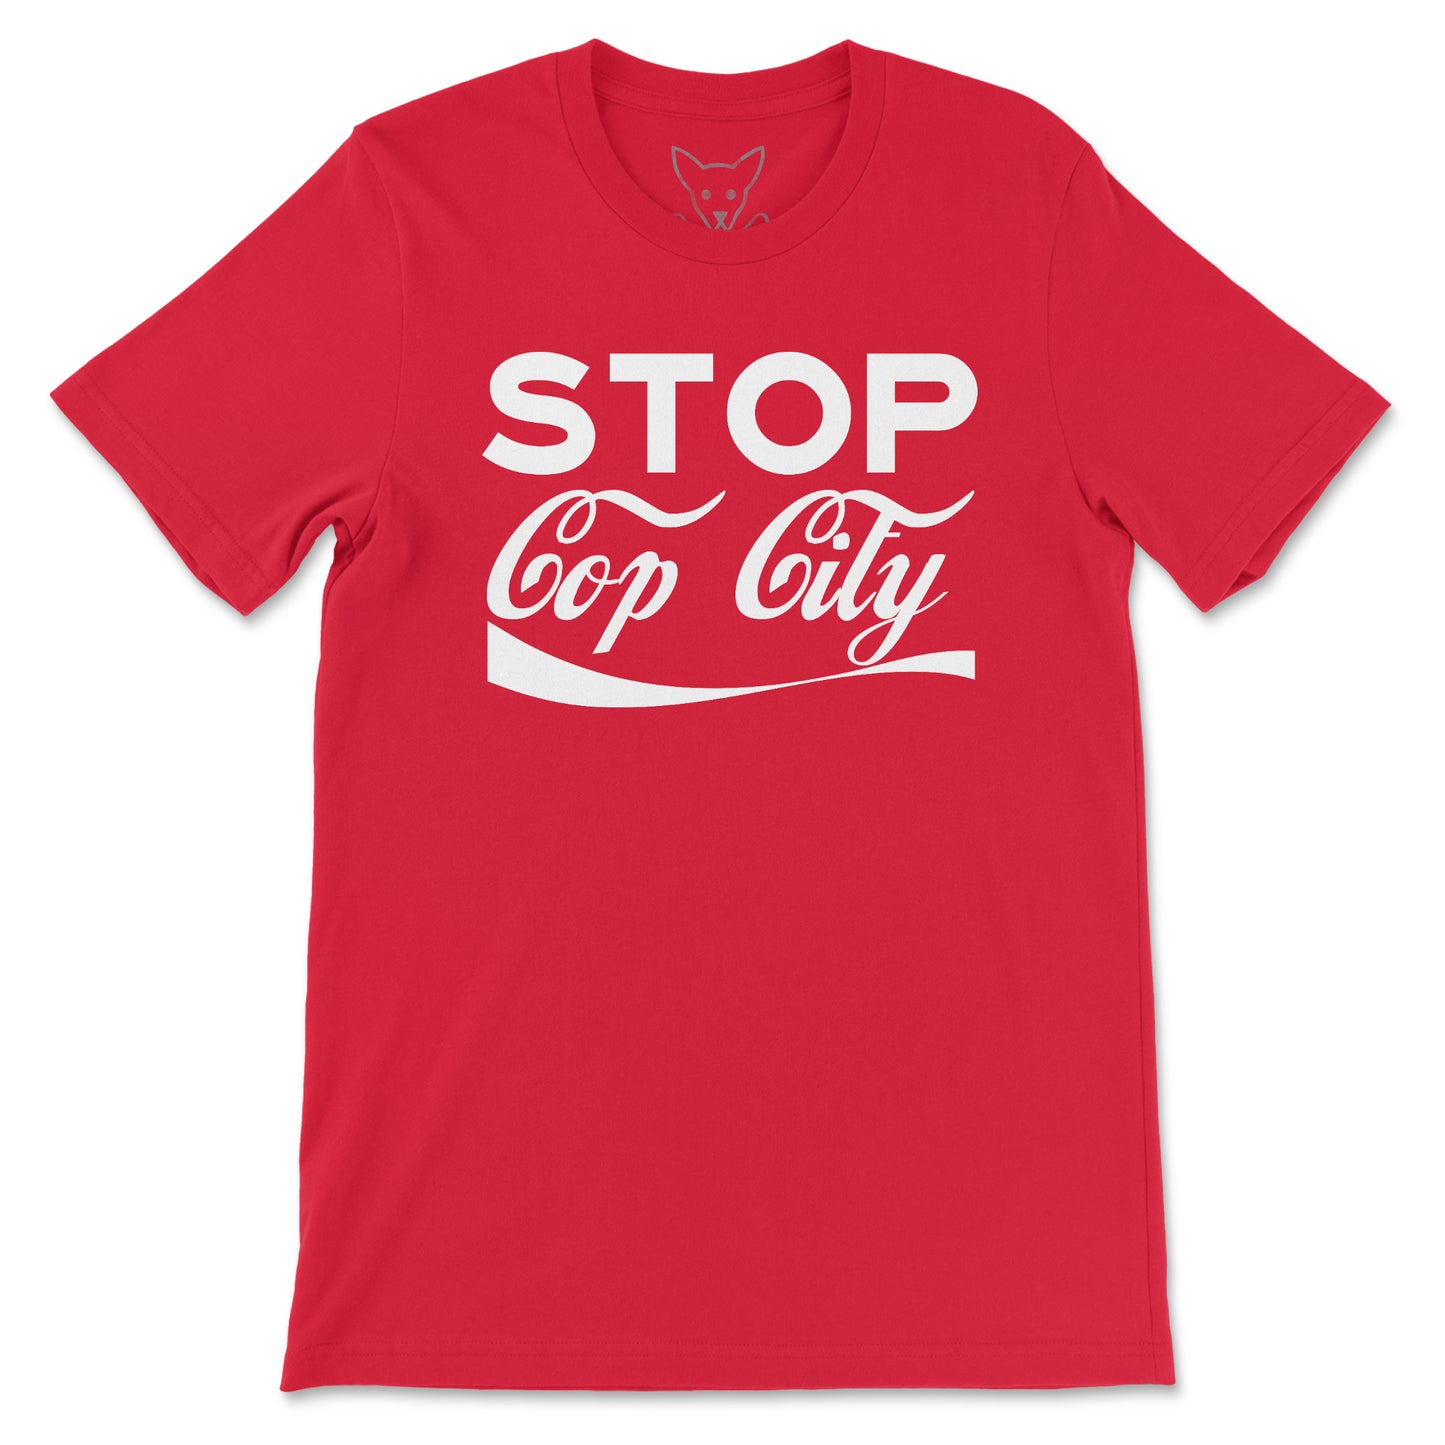 Stop Cop City Tee